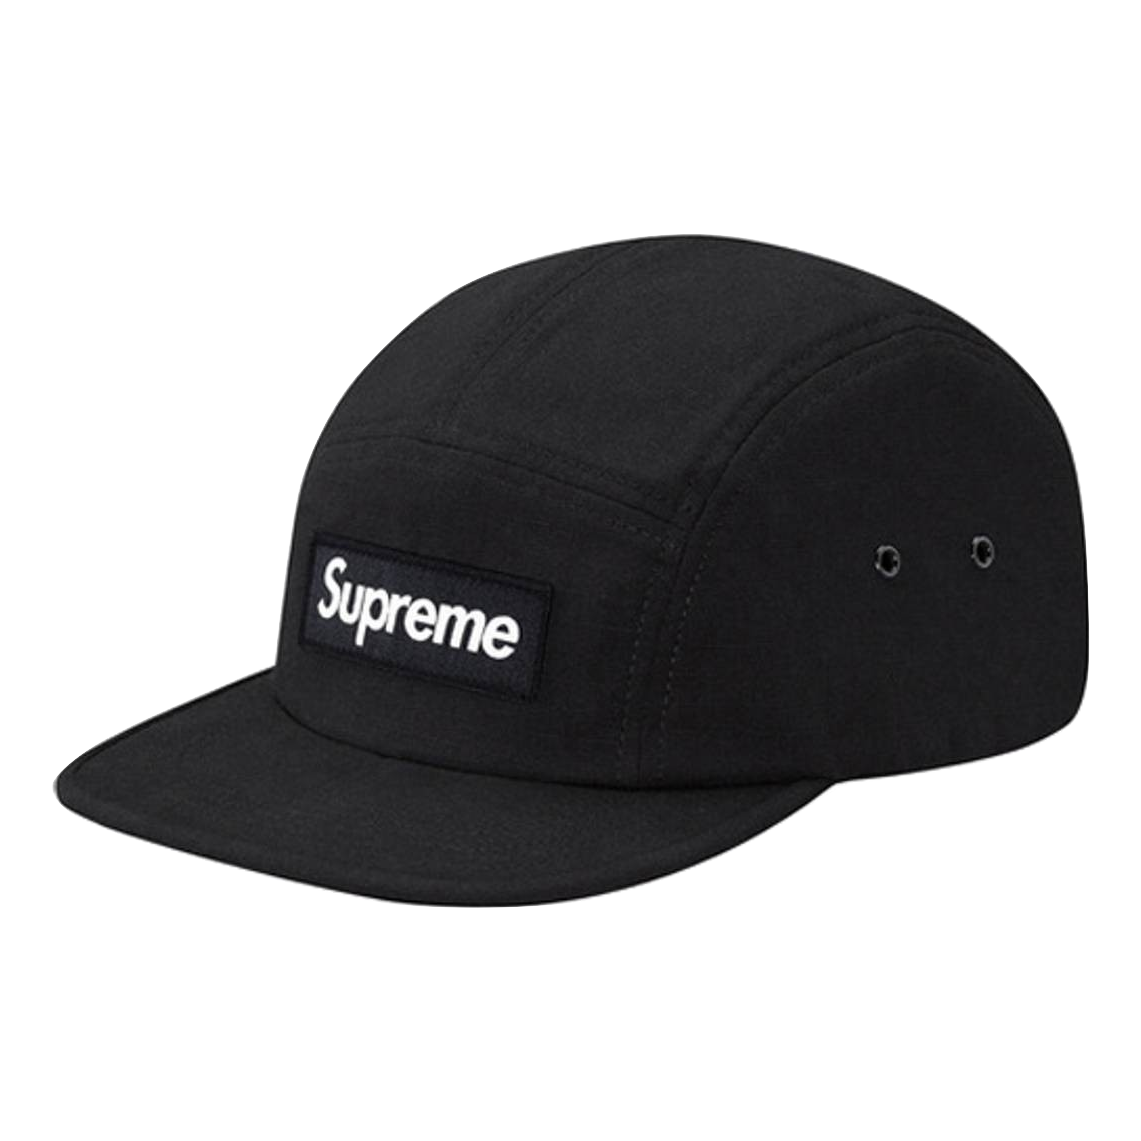 BRAND NEW SS16 SUPREME SUEDE CAMP CAP BLACK RARE BOX LOGO